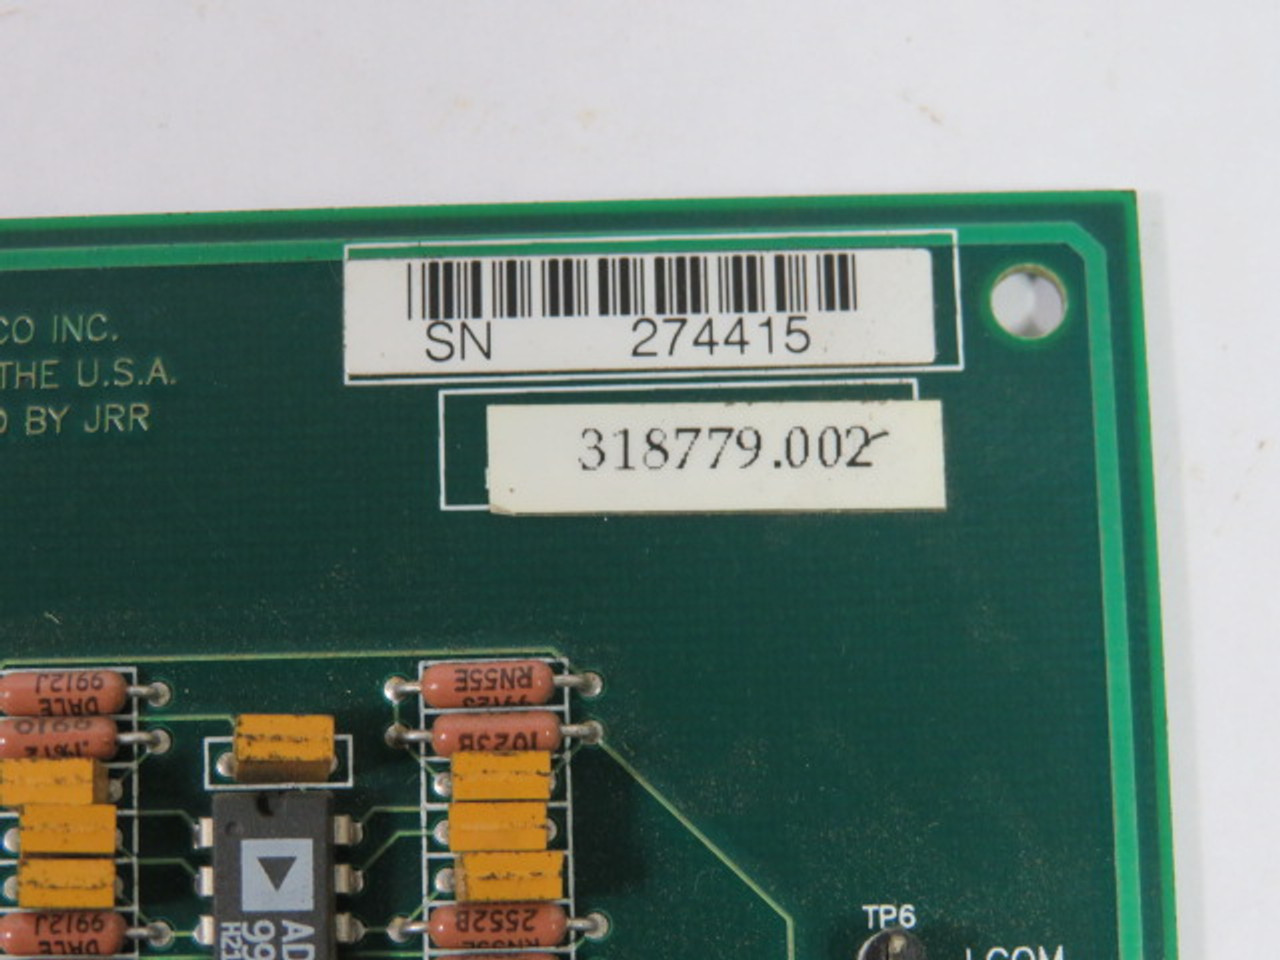 Unico 318779.002 Circuit Board USED